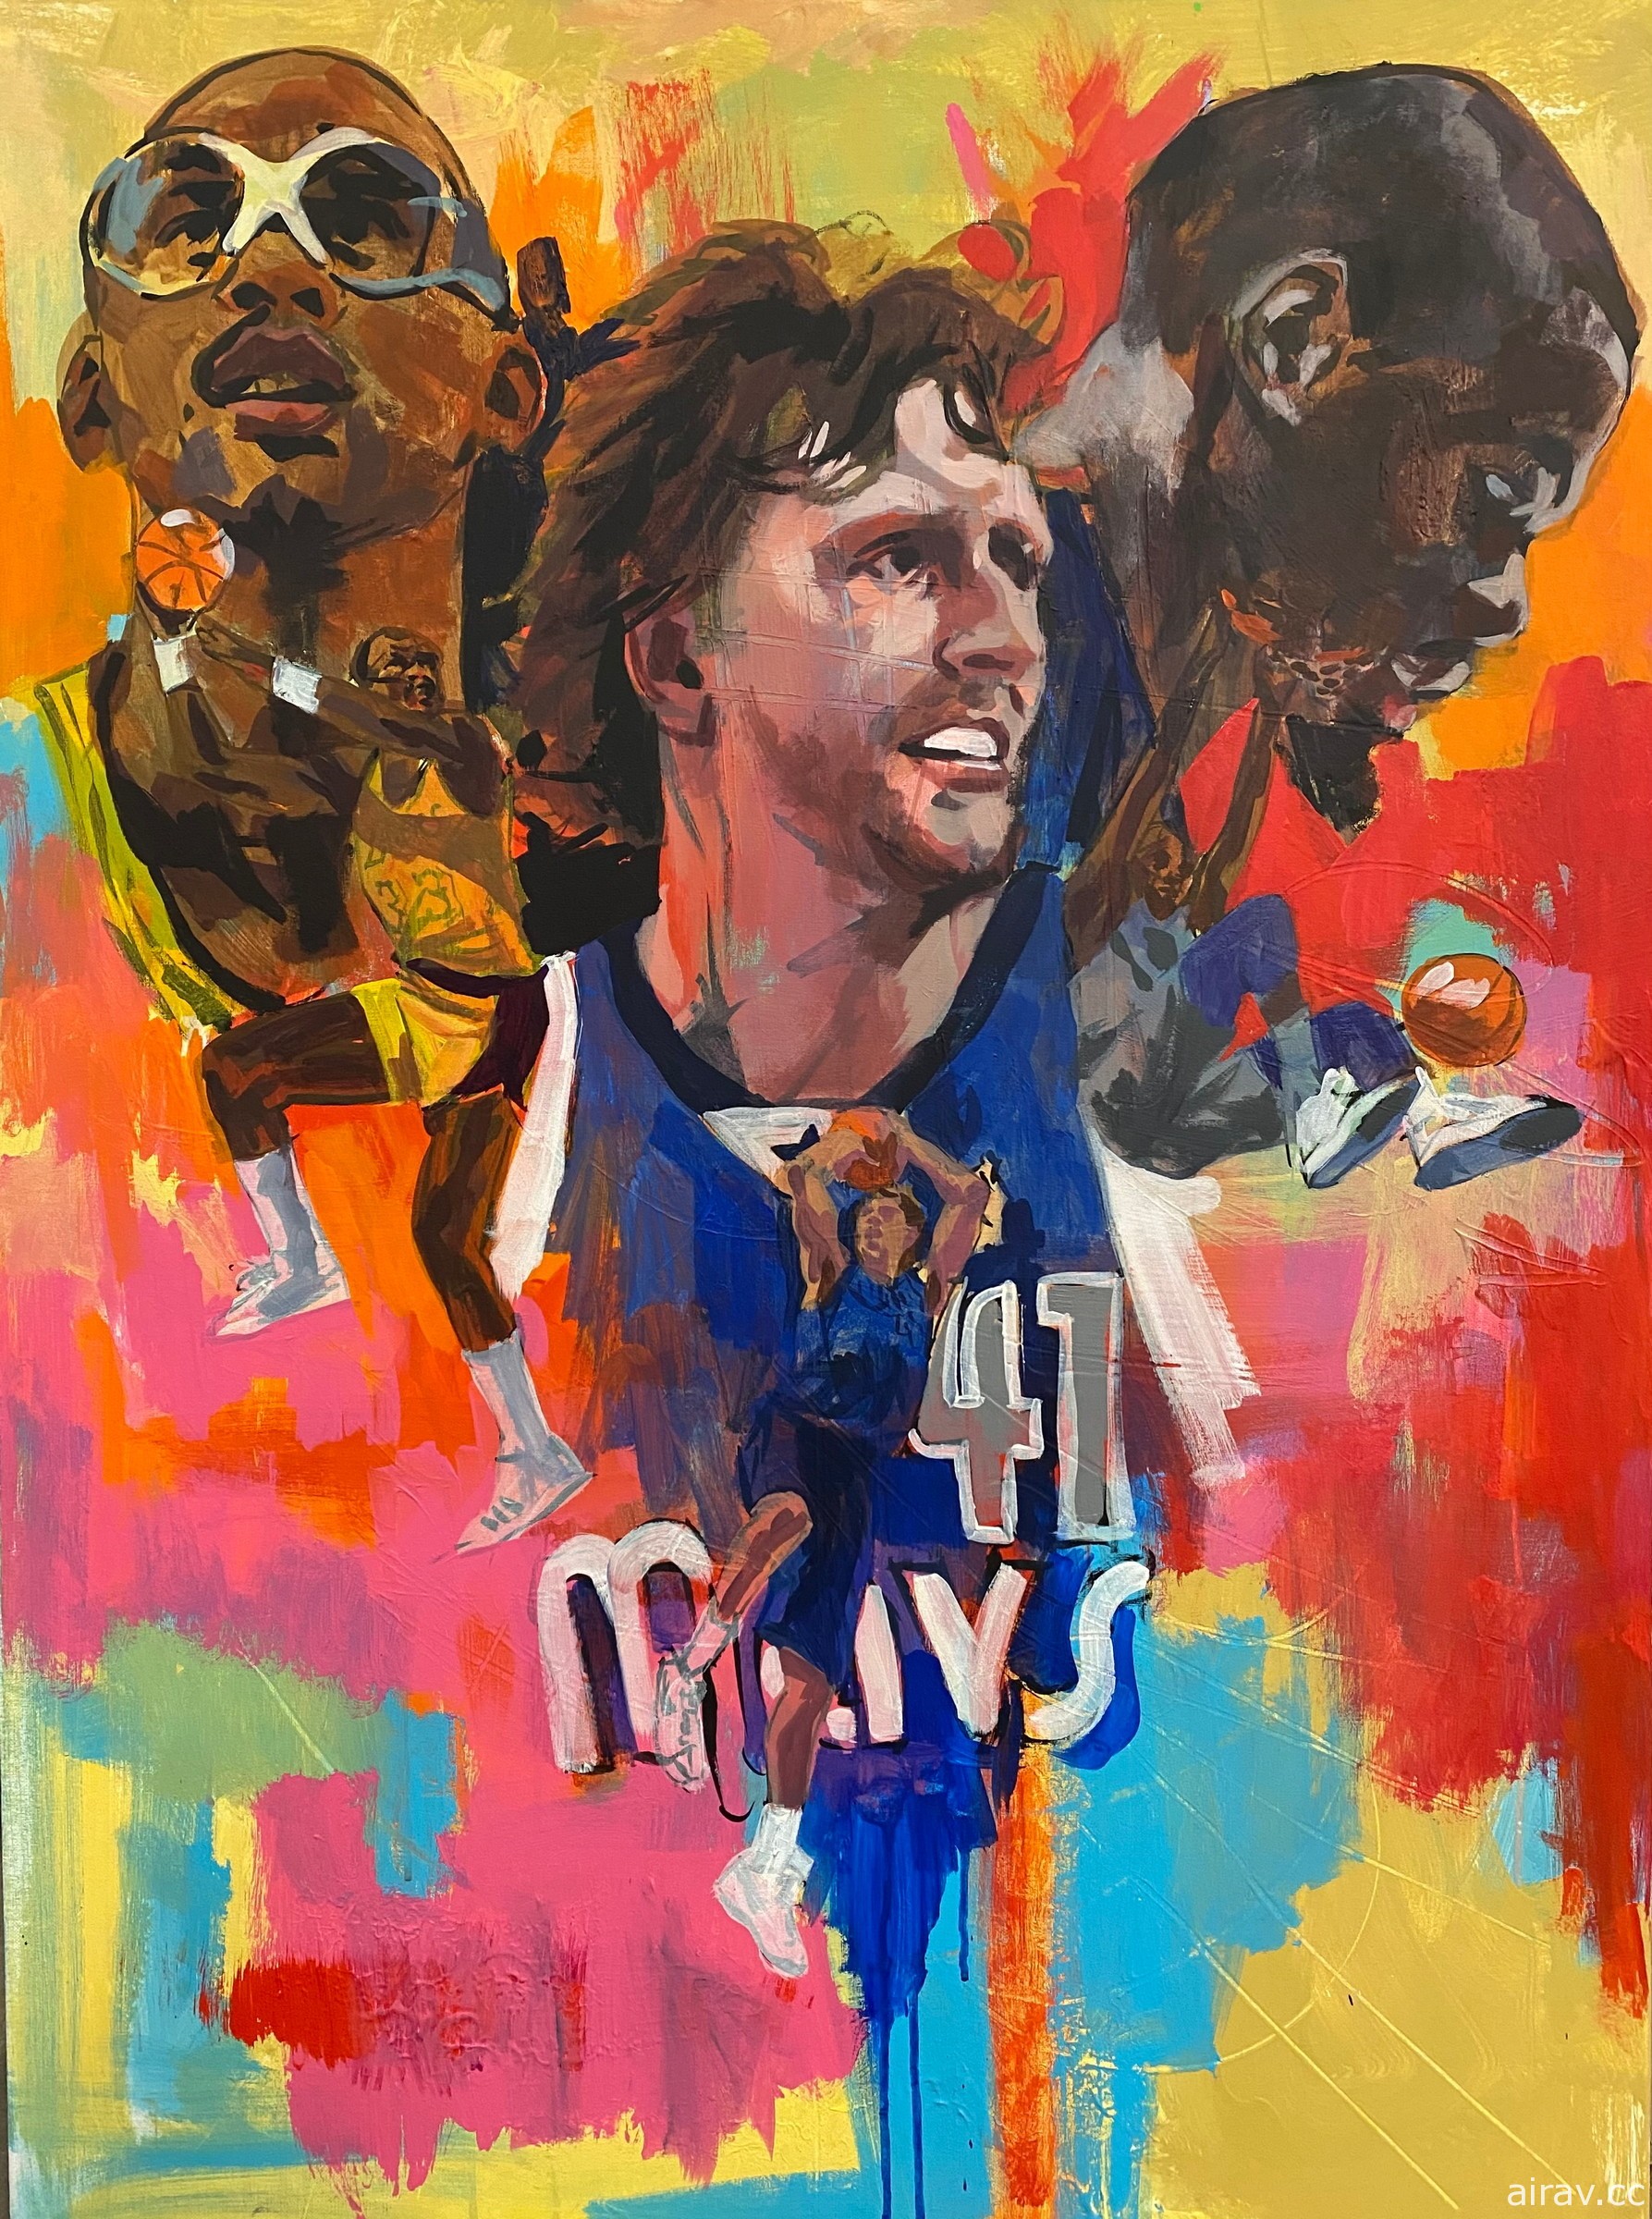 《NBA 2K22》公布 75 周年紀念版封面插畫 邀請杜蘭特、諾威斯基與賈霸擔任封面球星